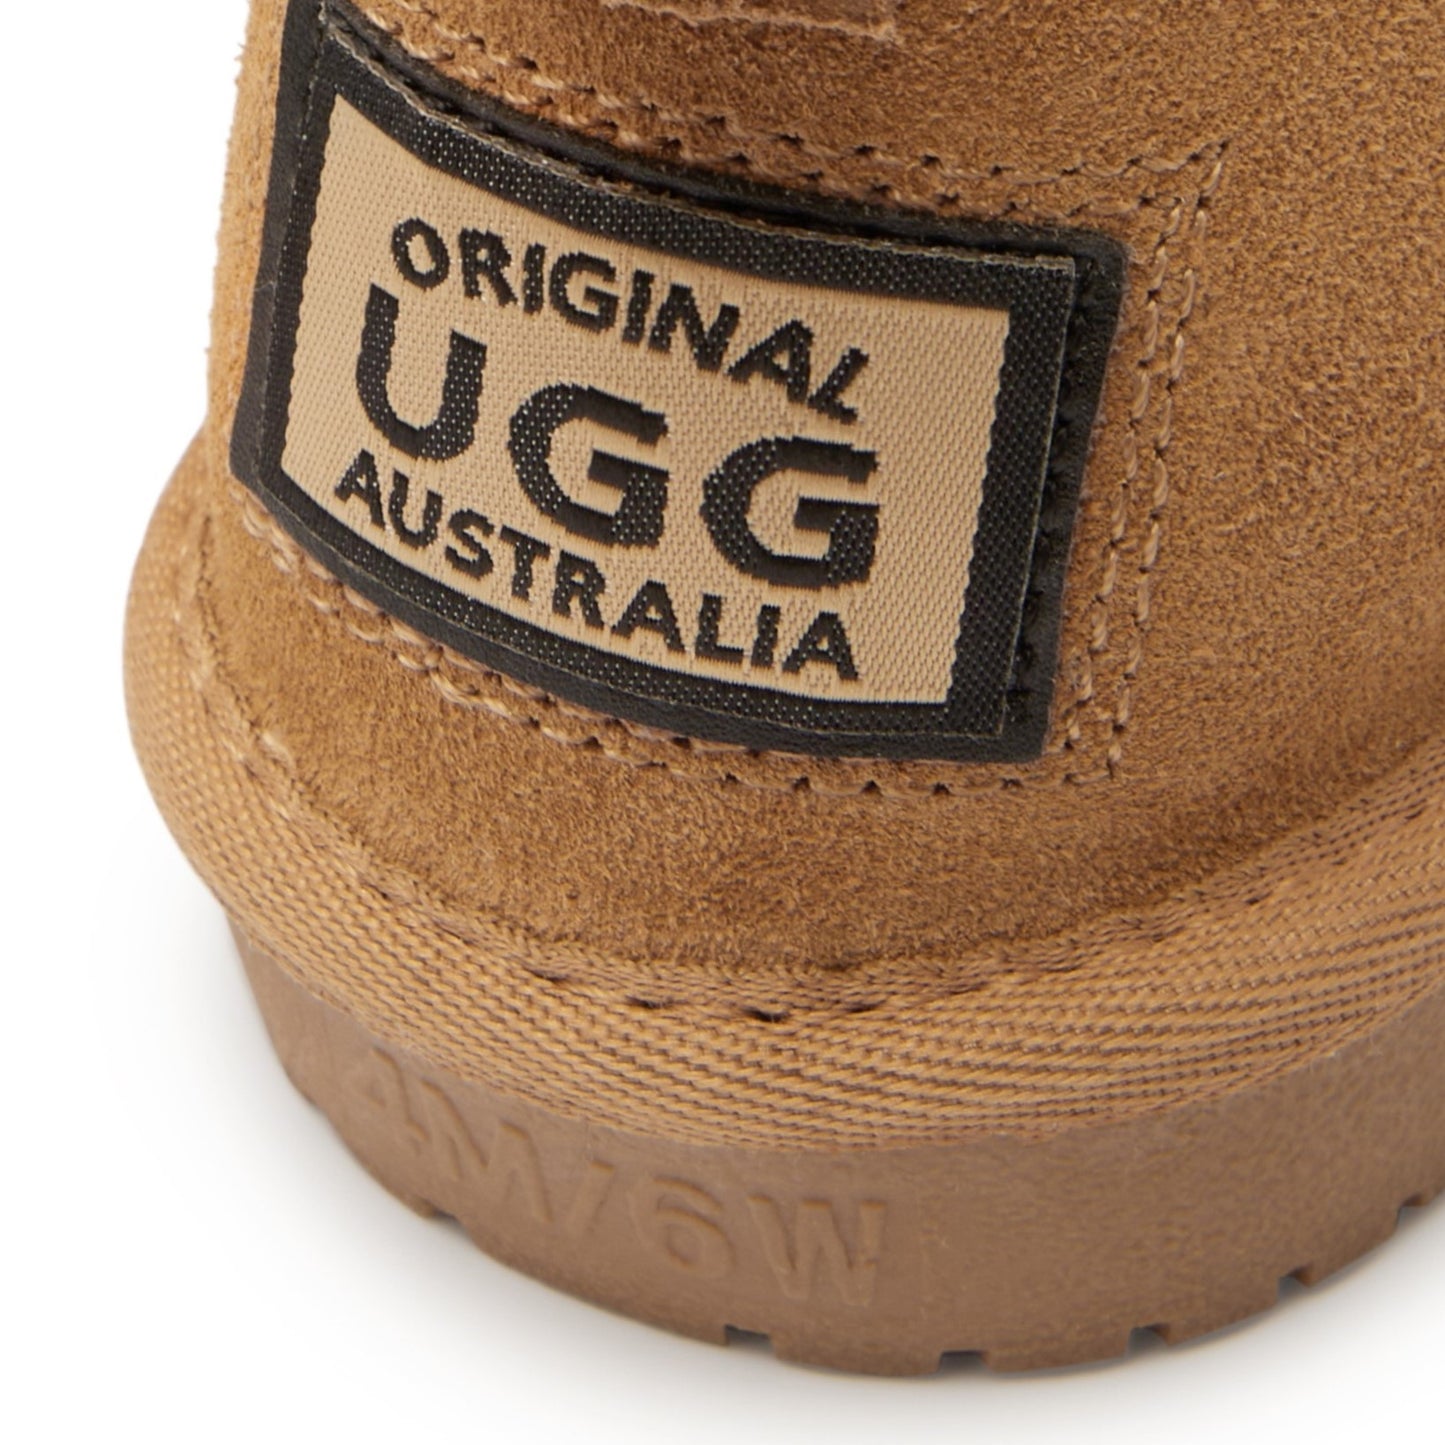 Originals Ugg Australia Mid Button Boots Chestnut